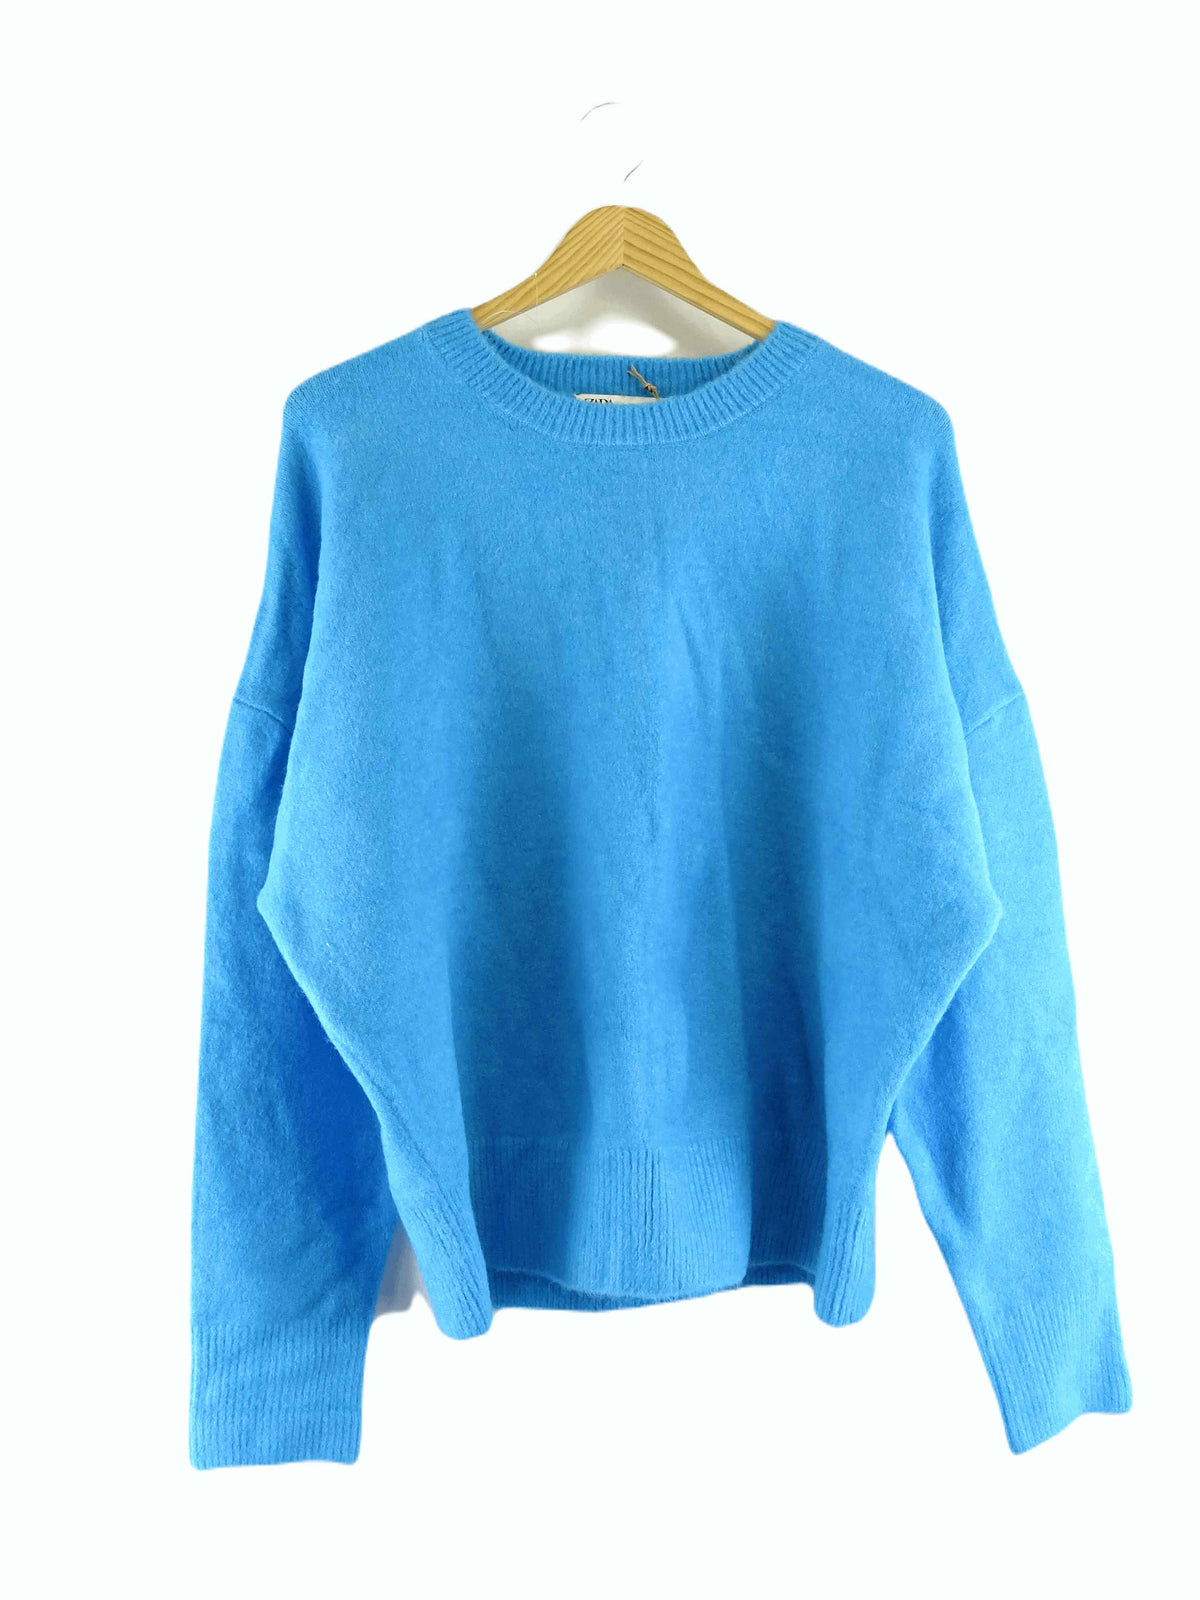 Zara Blue Knit Jumper XL